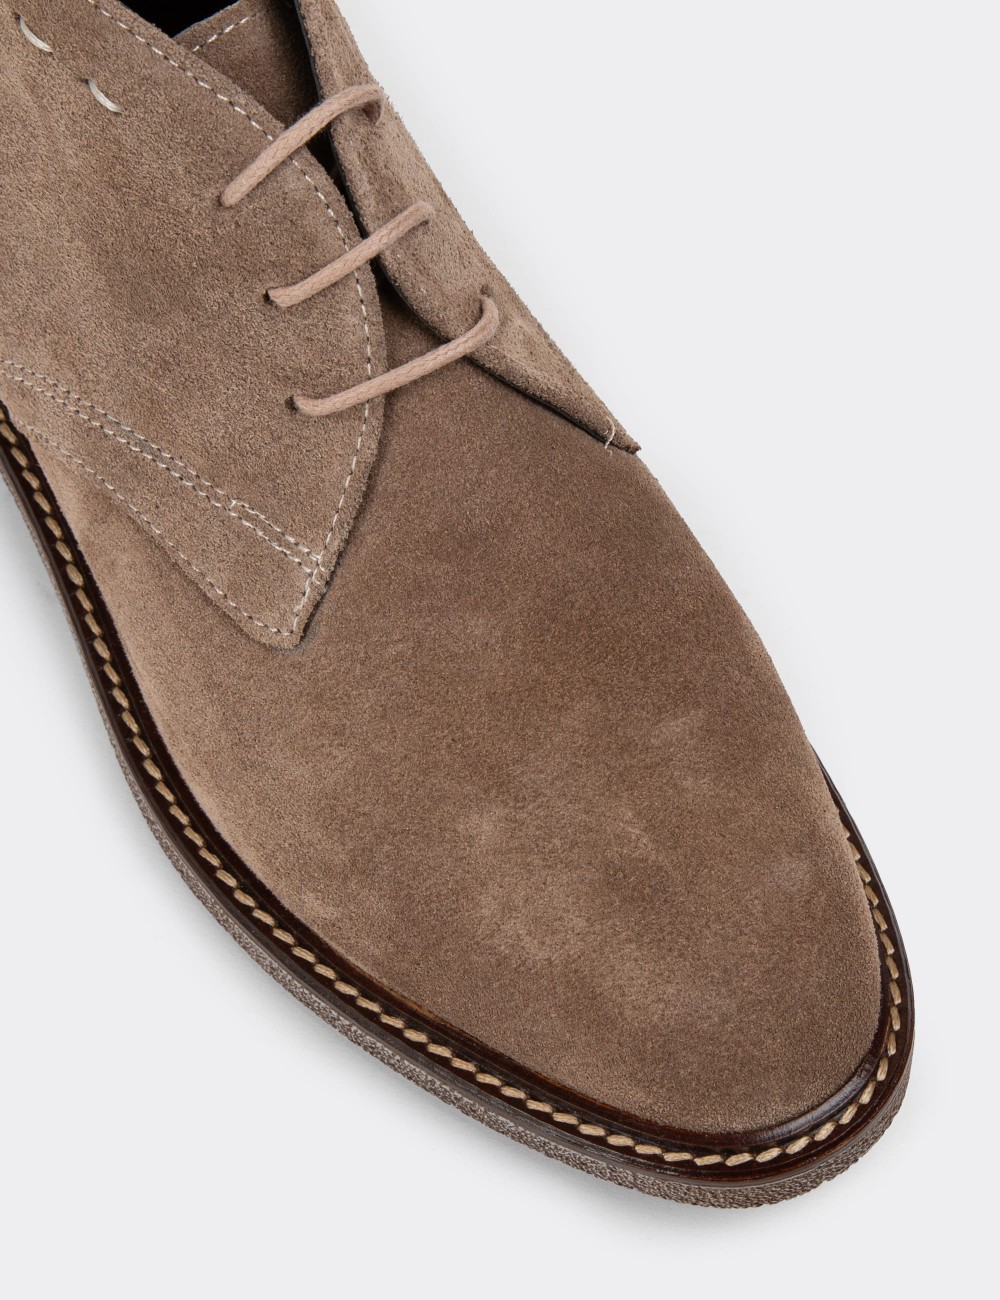 Sandstone Suede Leather Desert Boots - 01967ZVZNC01